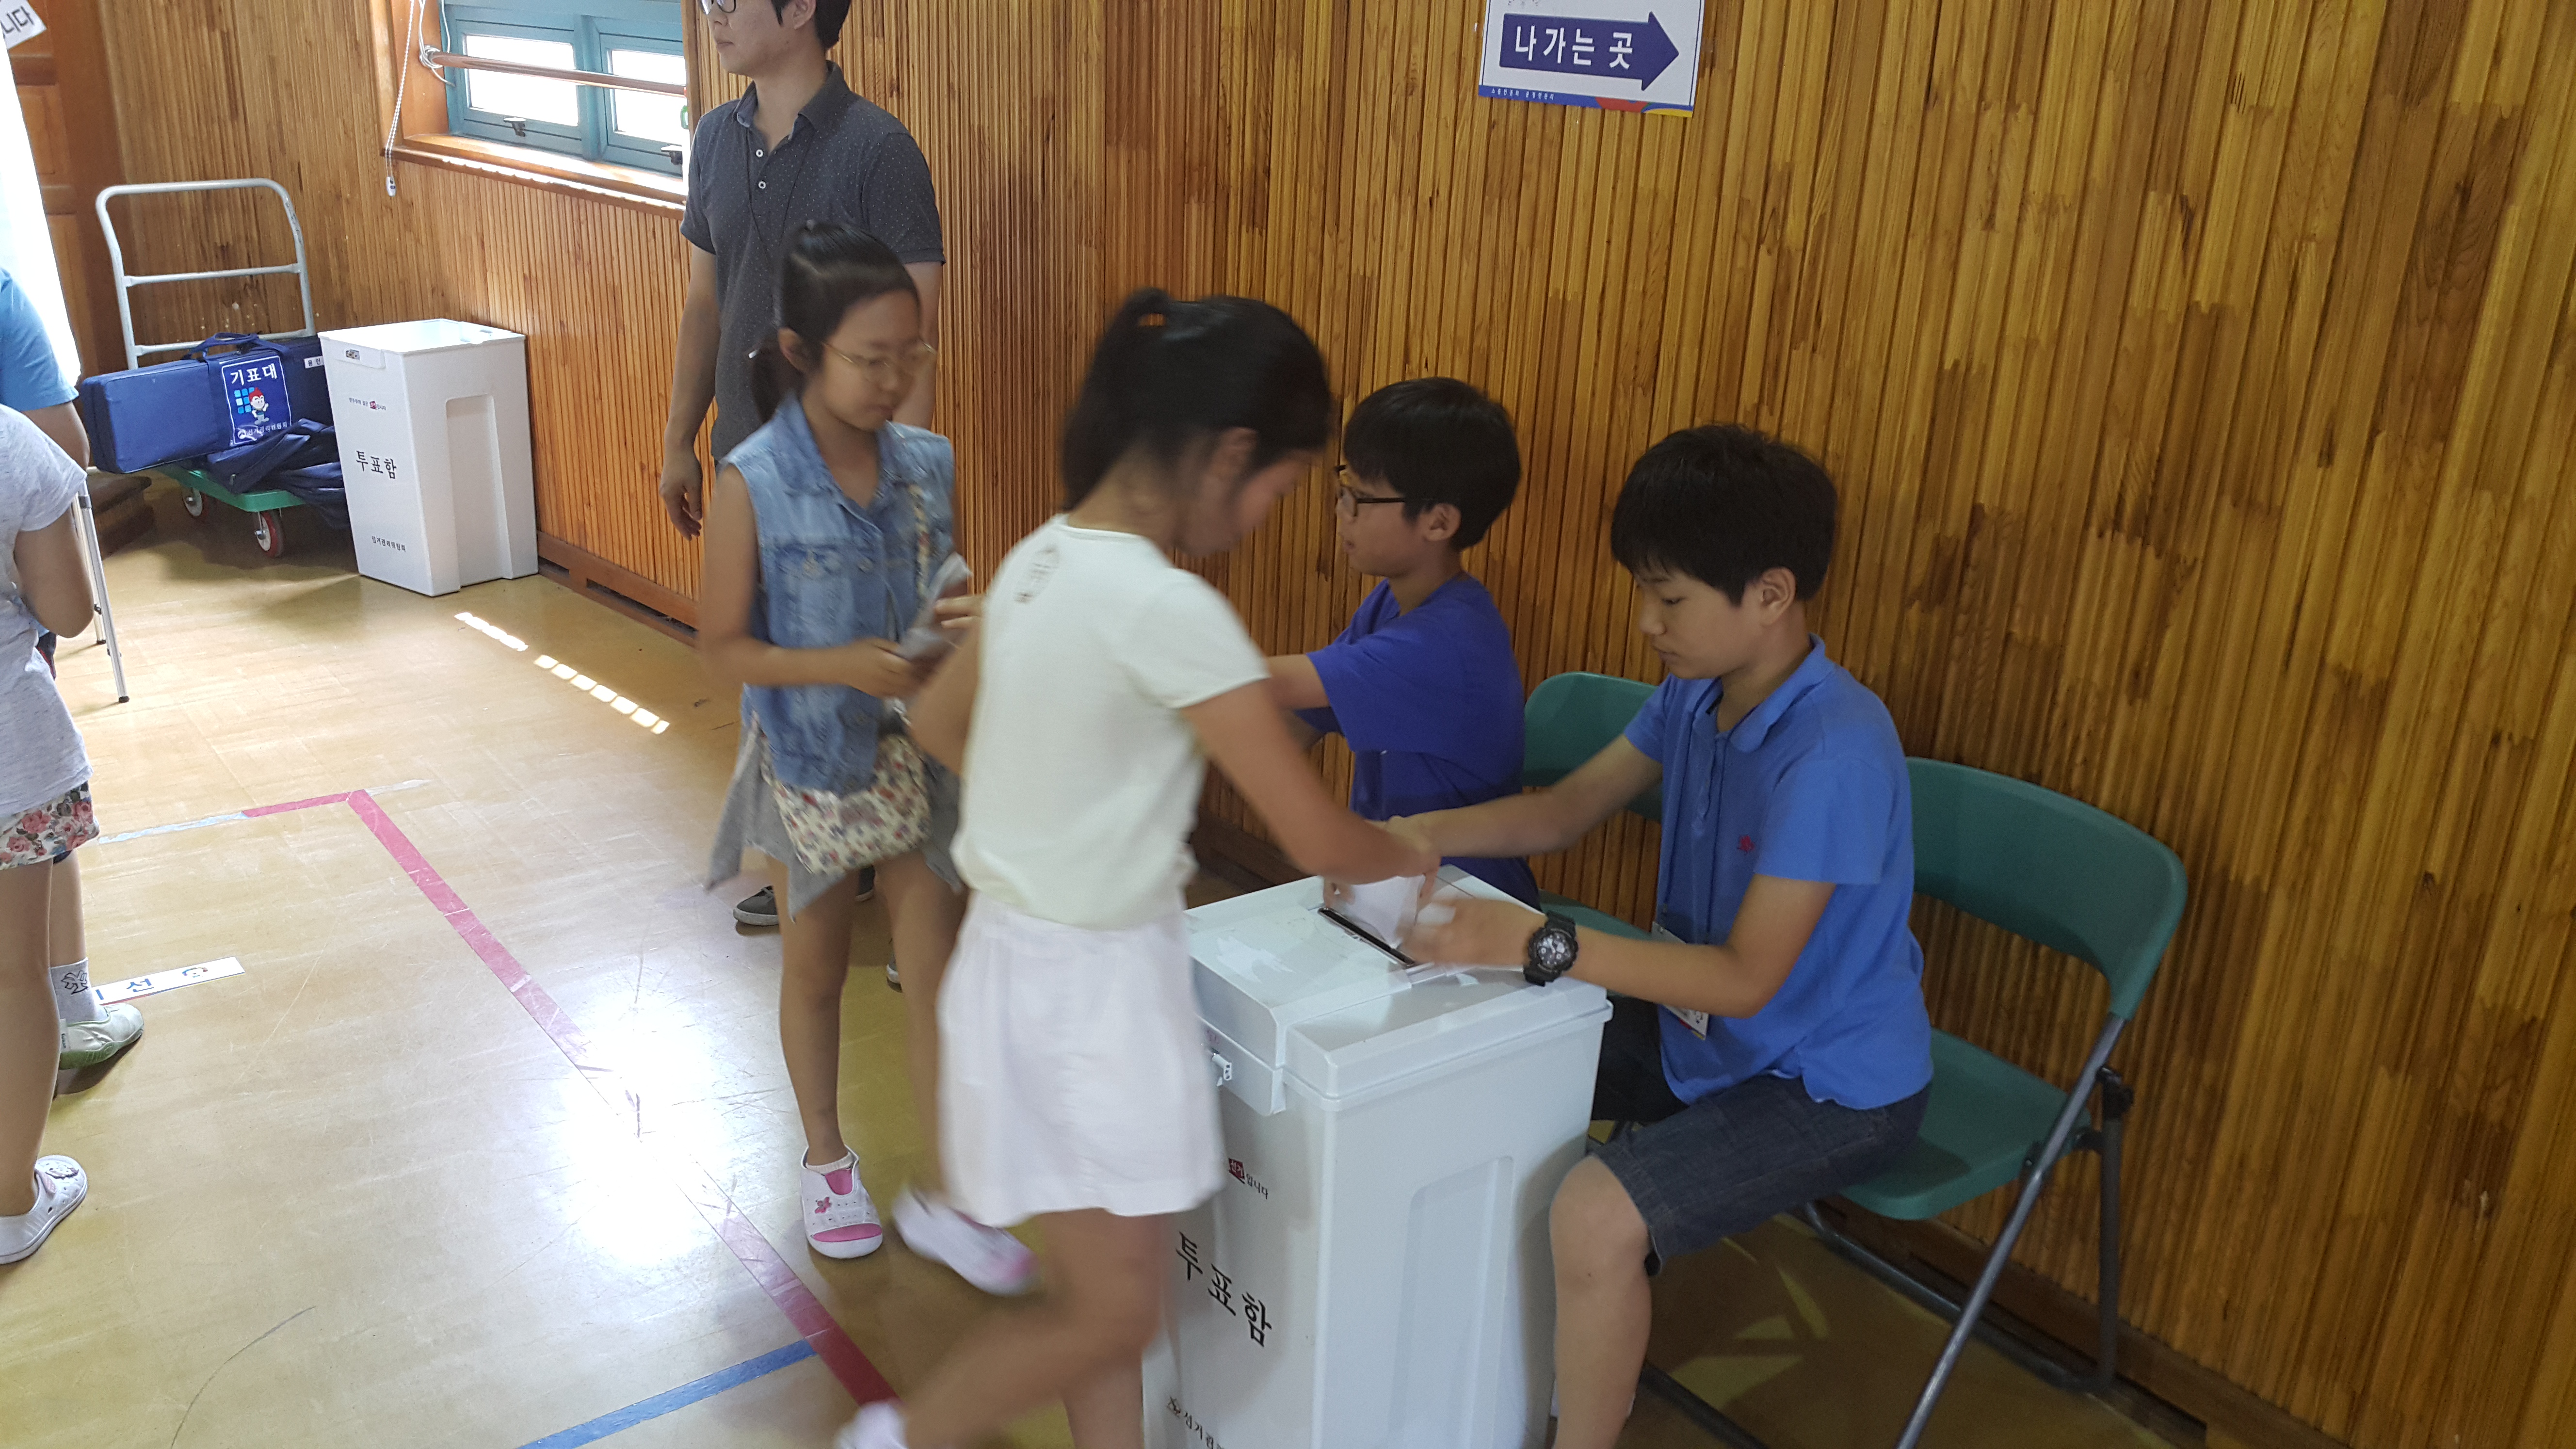 투표를 마친 학생들이 투표지를 투표함에 투입하고 있는 모습의 사진입니다.